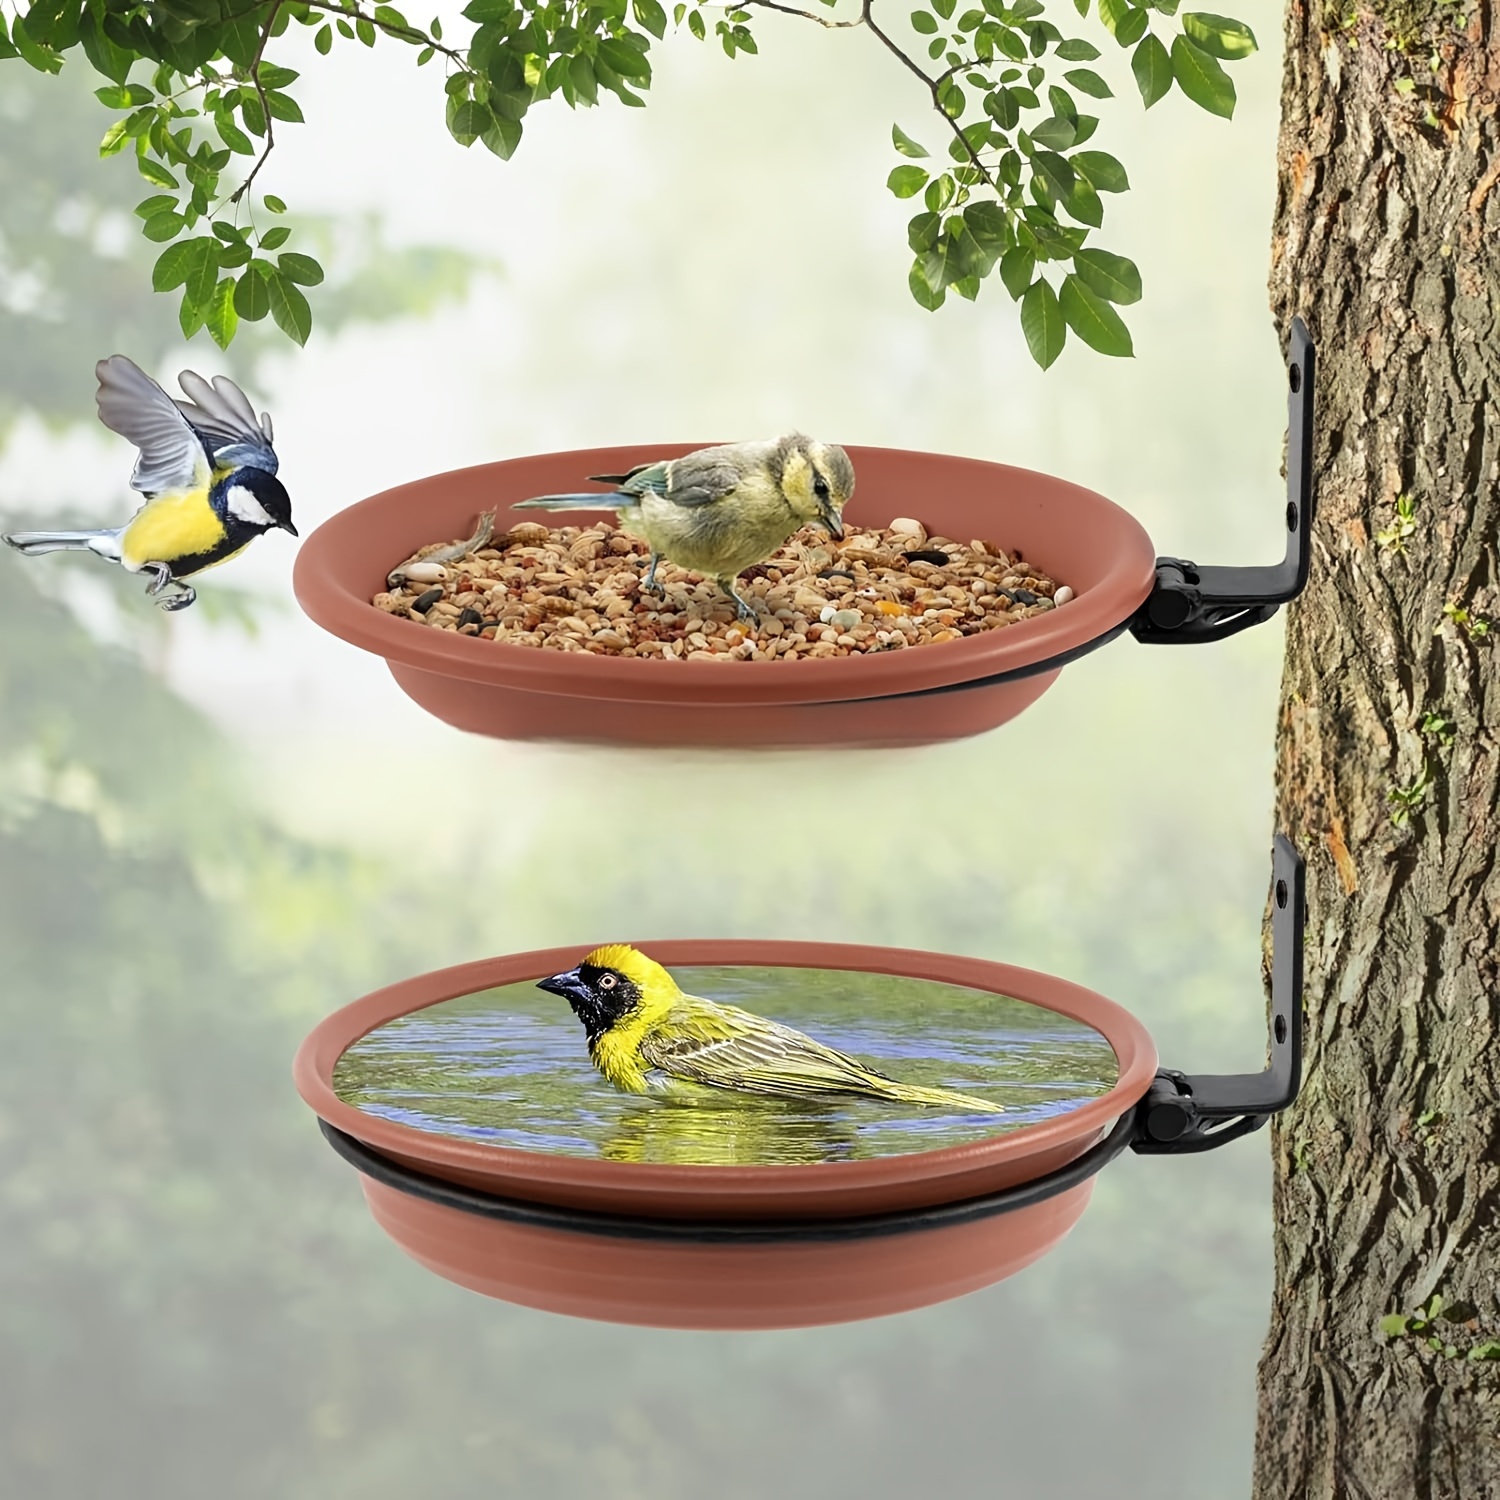 

1pc Hanging Bird Feeder & Bath - Durable Iron, Outdoor Garden Decor For Hummingbirds And Other Bird Species Hummingbird Feeders For Outdoors Hanging Bird Bath For Cage